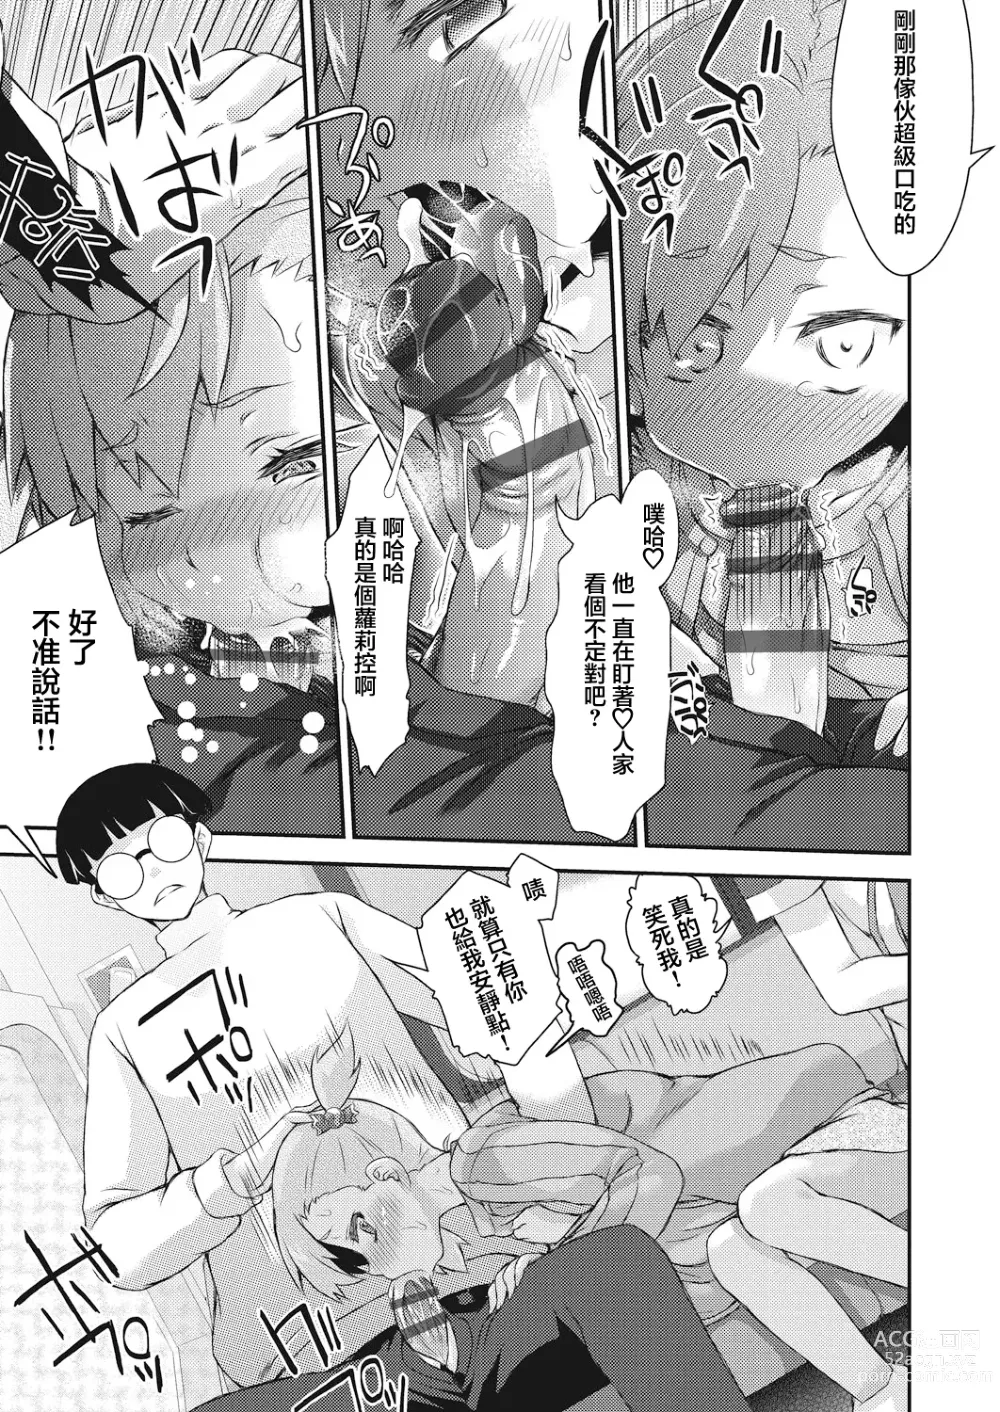 Page 3 of manga BOCCHI NO ZAMMA 2